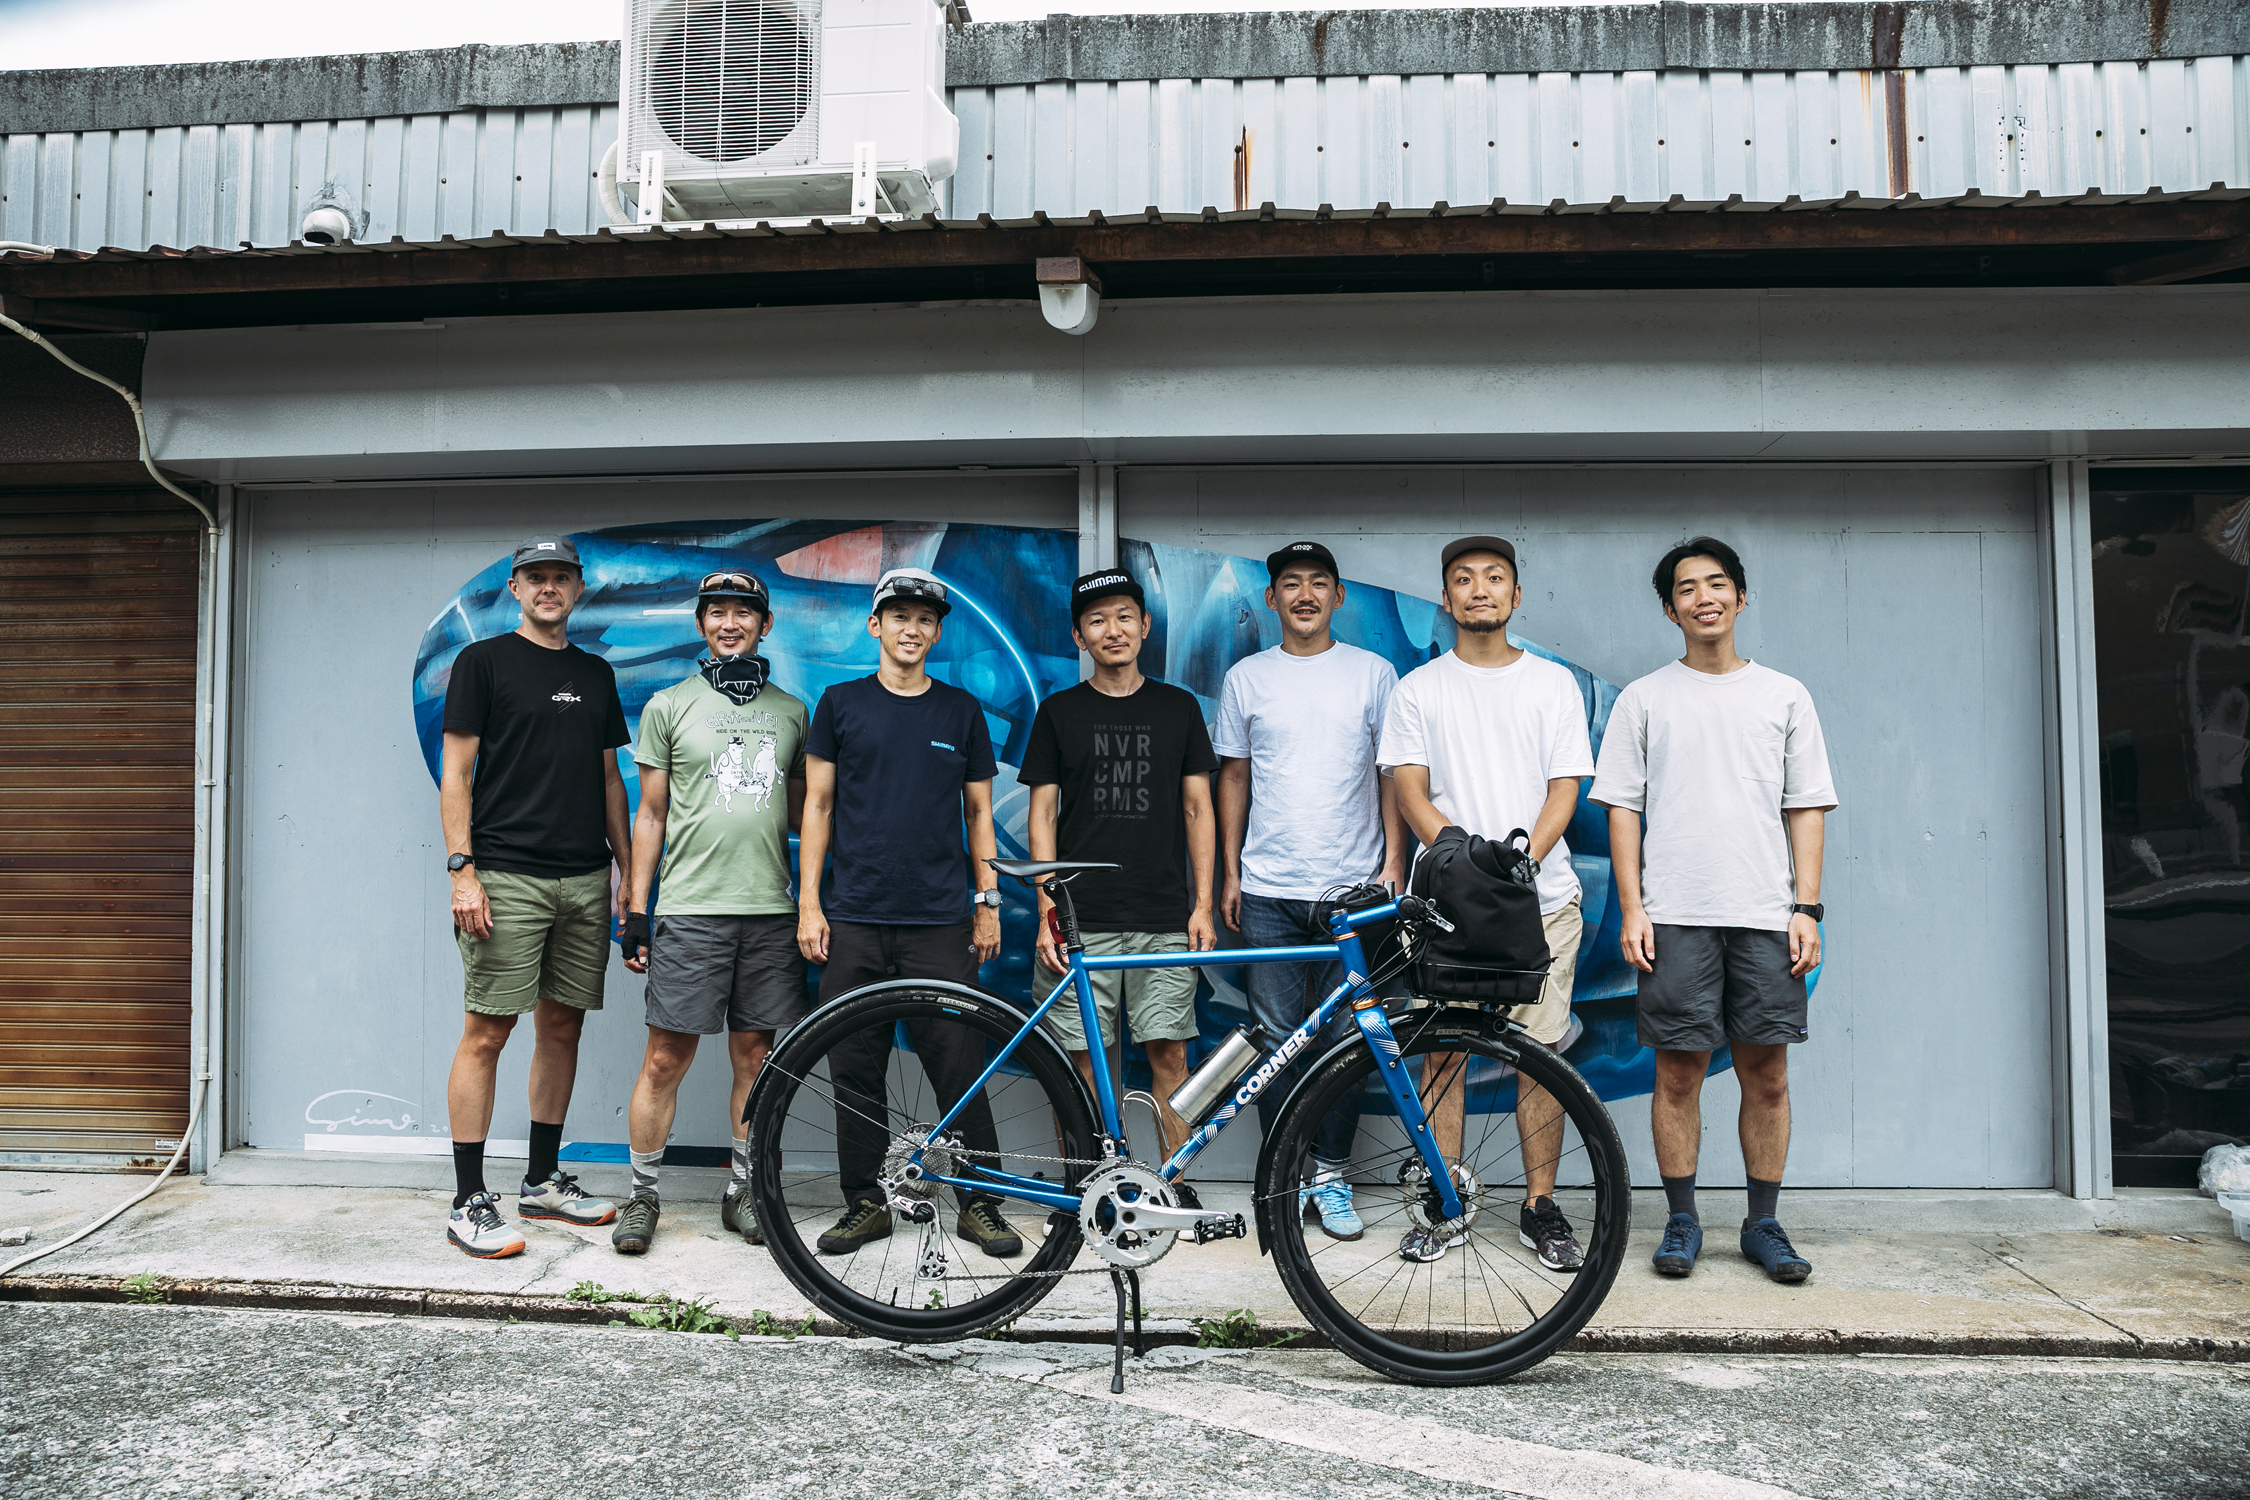 De crew van Corner Bikes voor de winkel